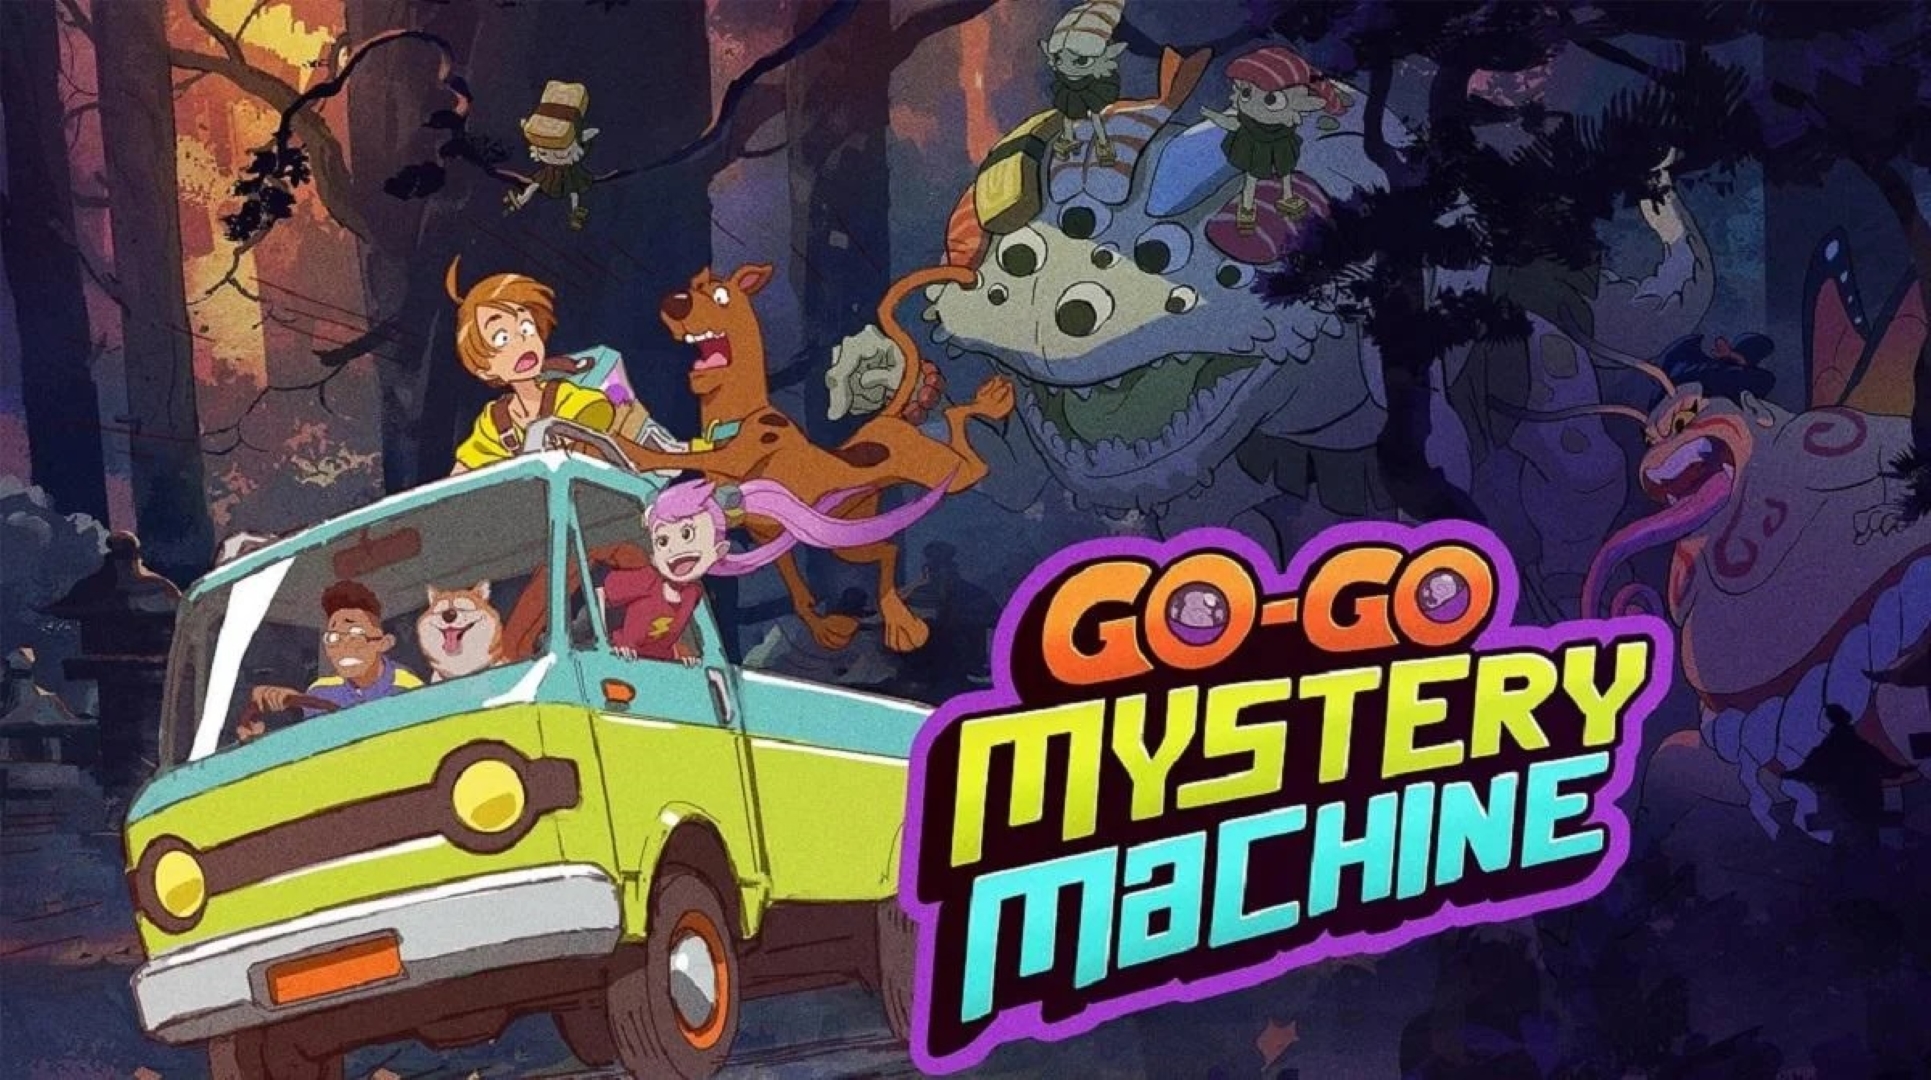 Go-Go Mystery Machine (Divulgação / Warner Bros. Discovery)